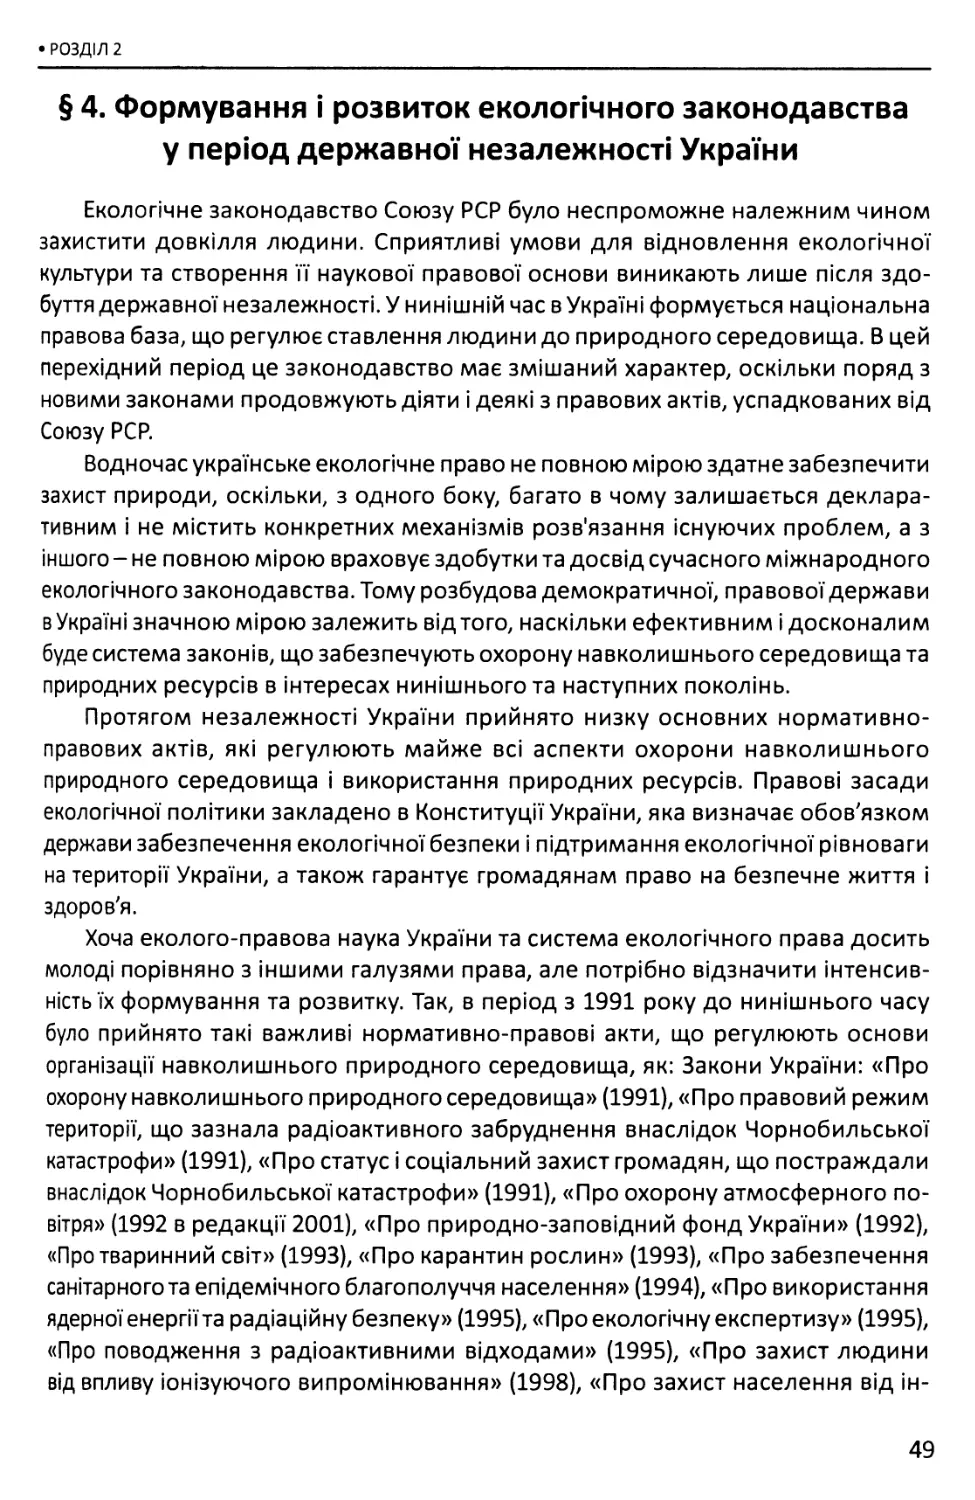 §4. Формування і розвиток екологічного законодавства у період державної незалежності України